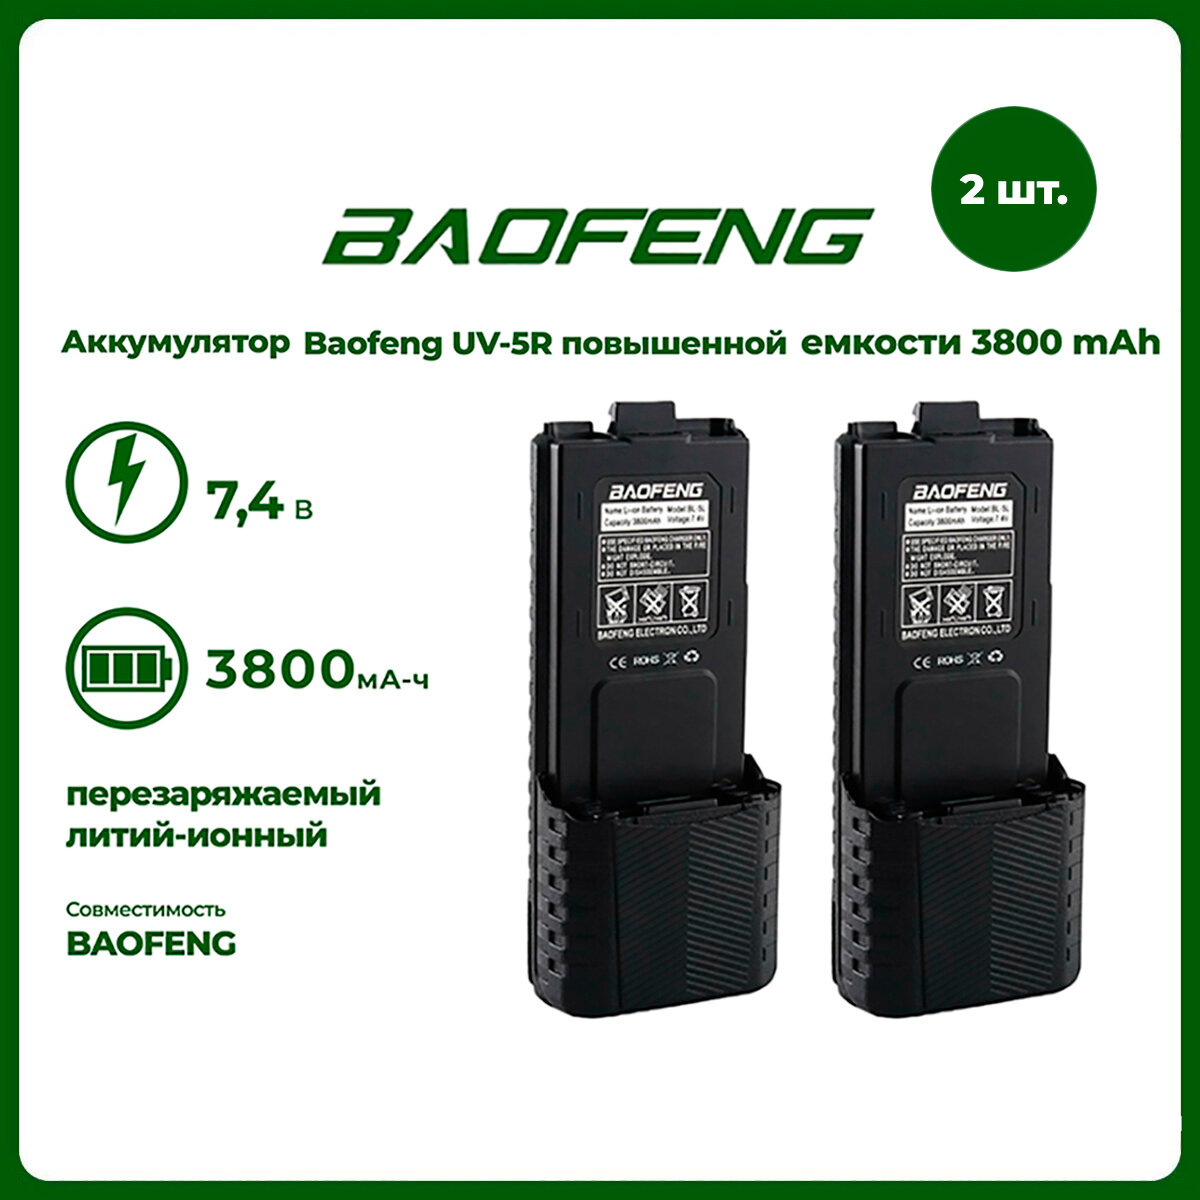 Аккумулятор для рации Baofeng UV-5R повышенной емкости 3800 mАч комплект 2 шт